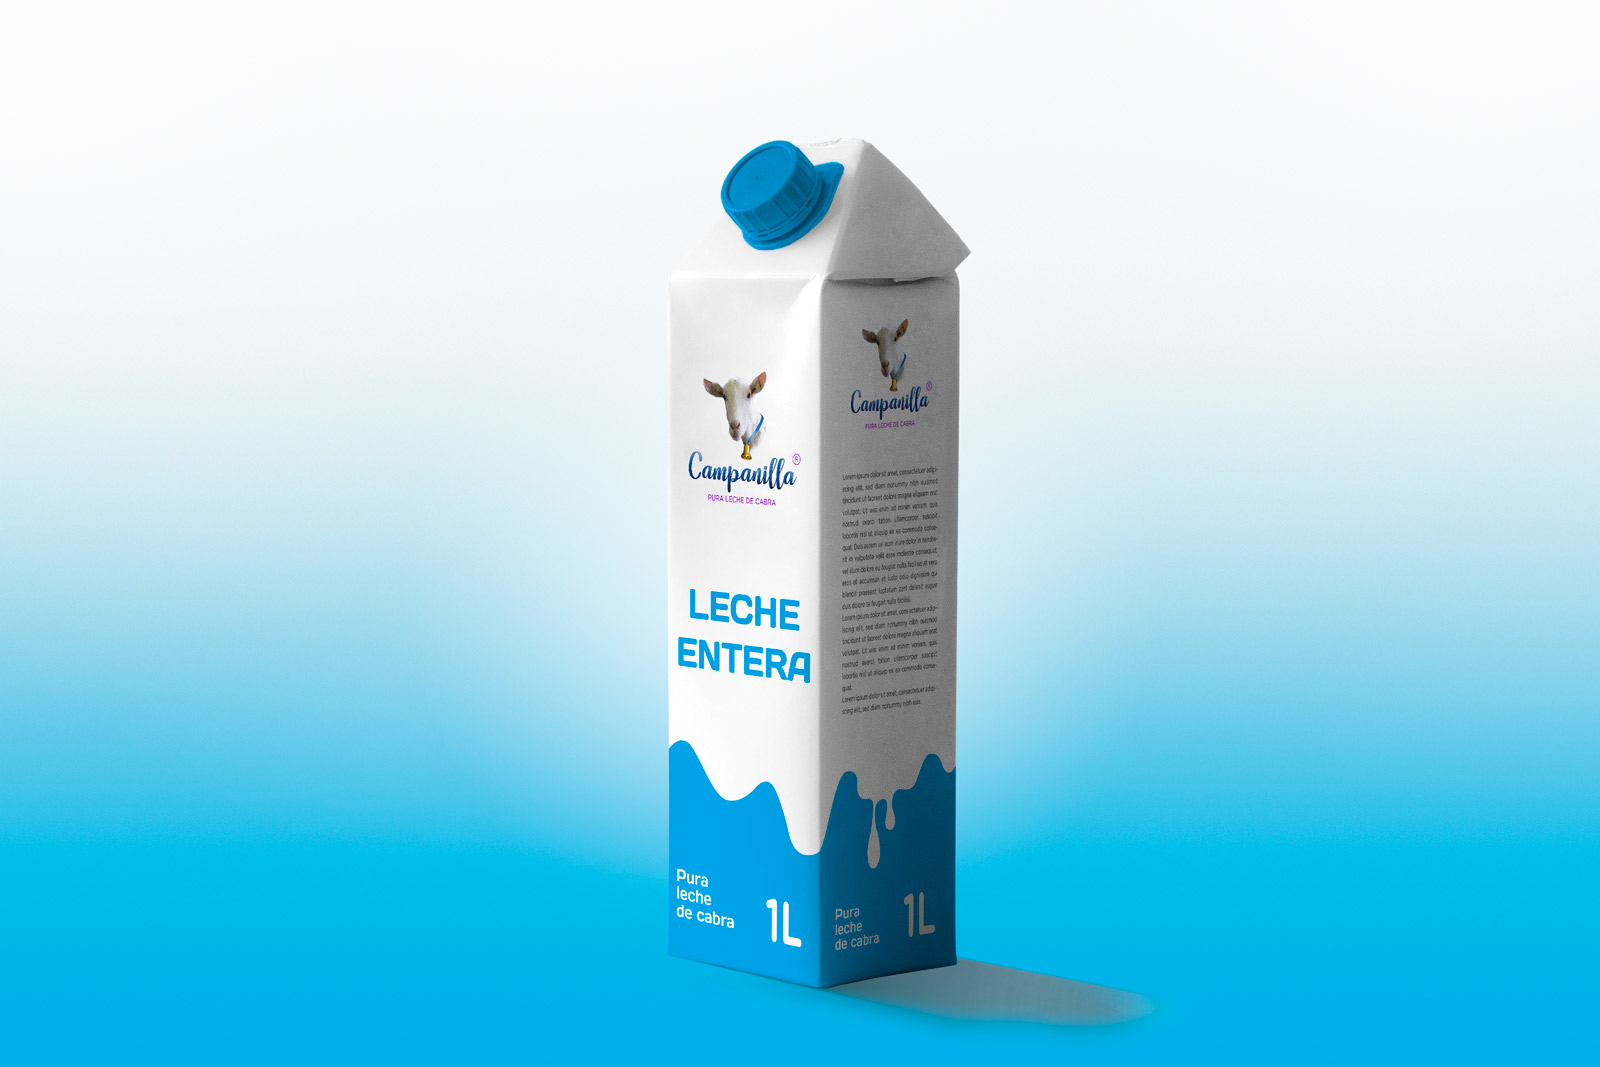 Diseño gráfico y creativo de etiquetas y packaging de brick de leche CAMPANILLA